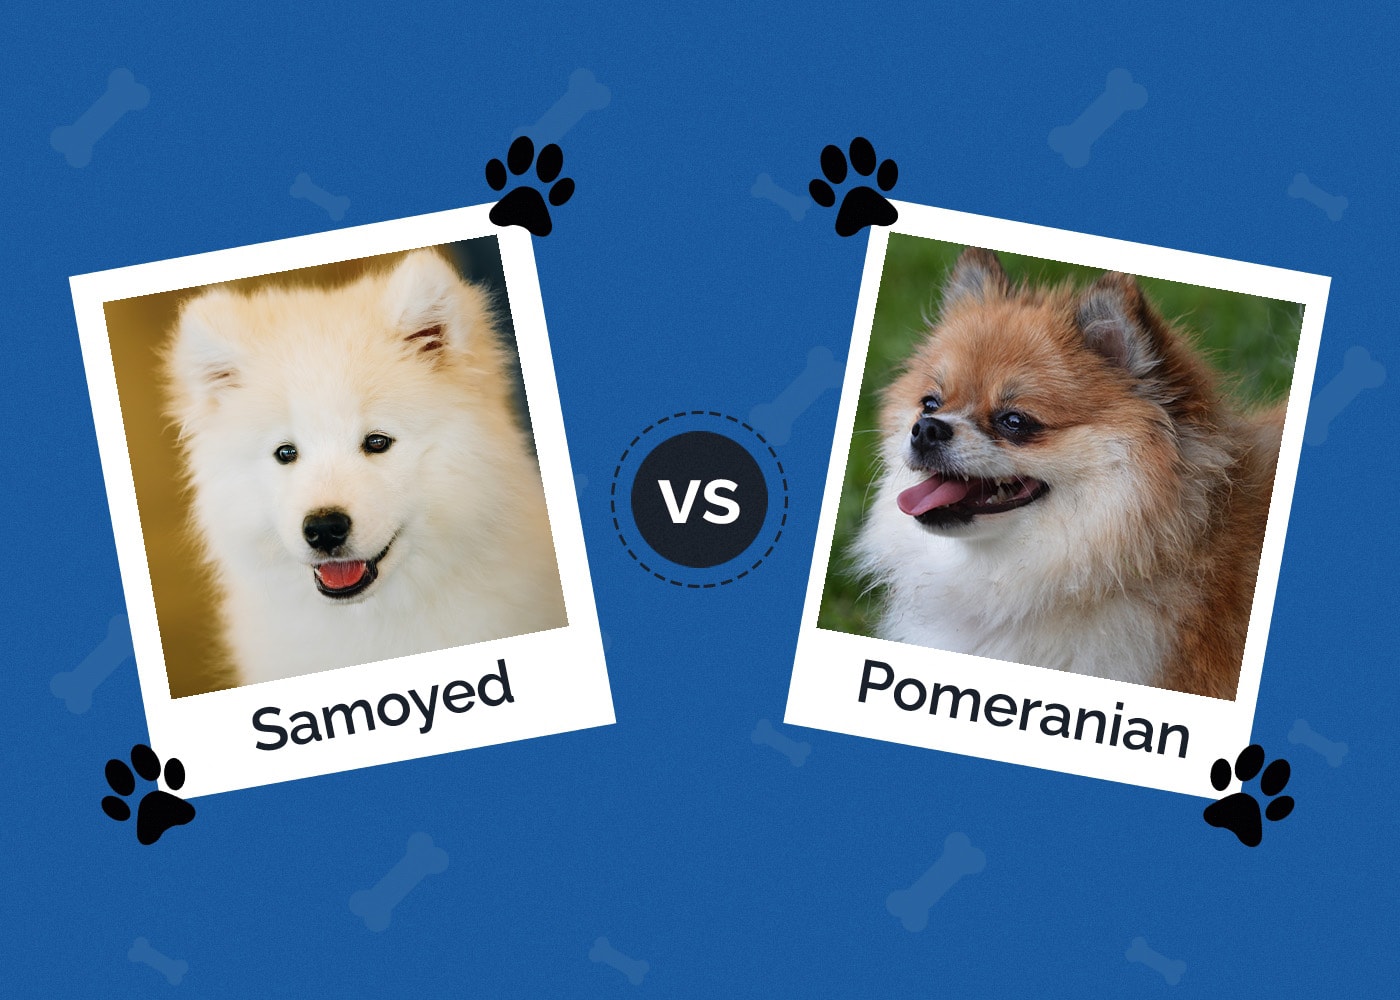 Samoyed vs Pomeranian